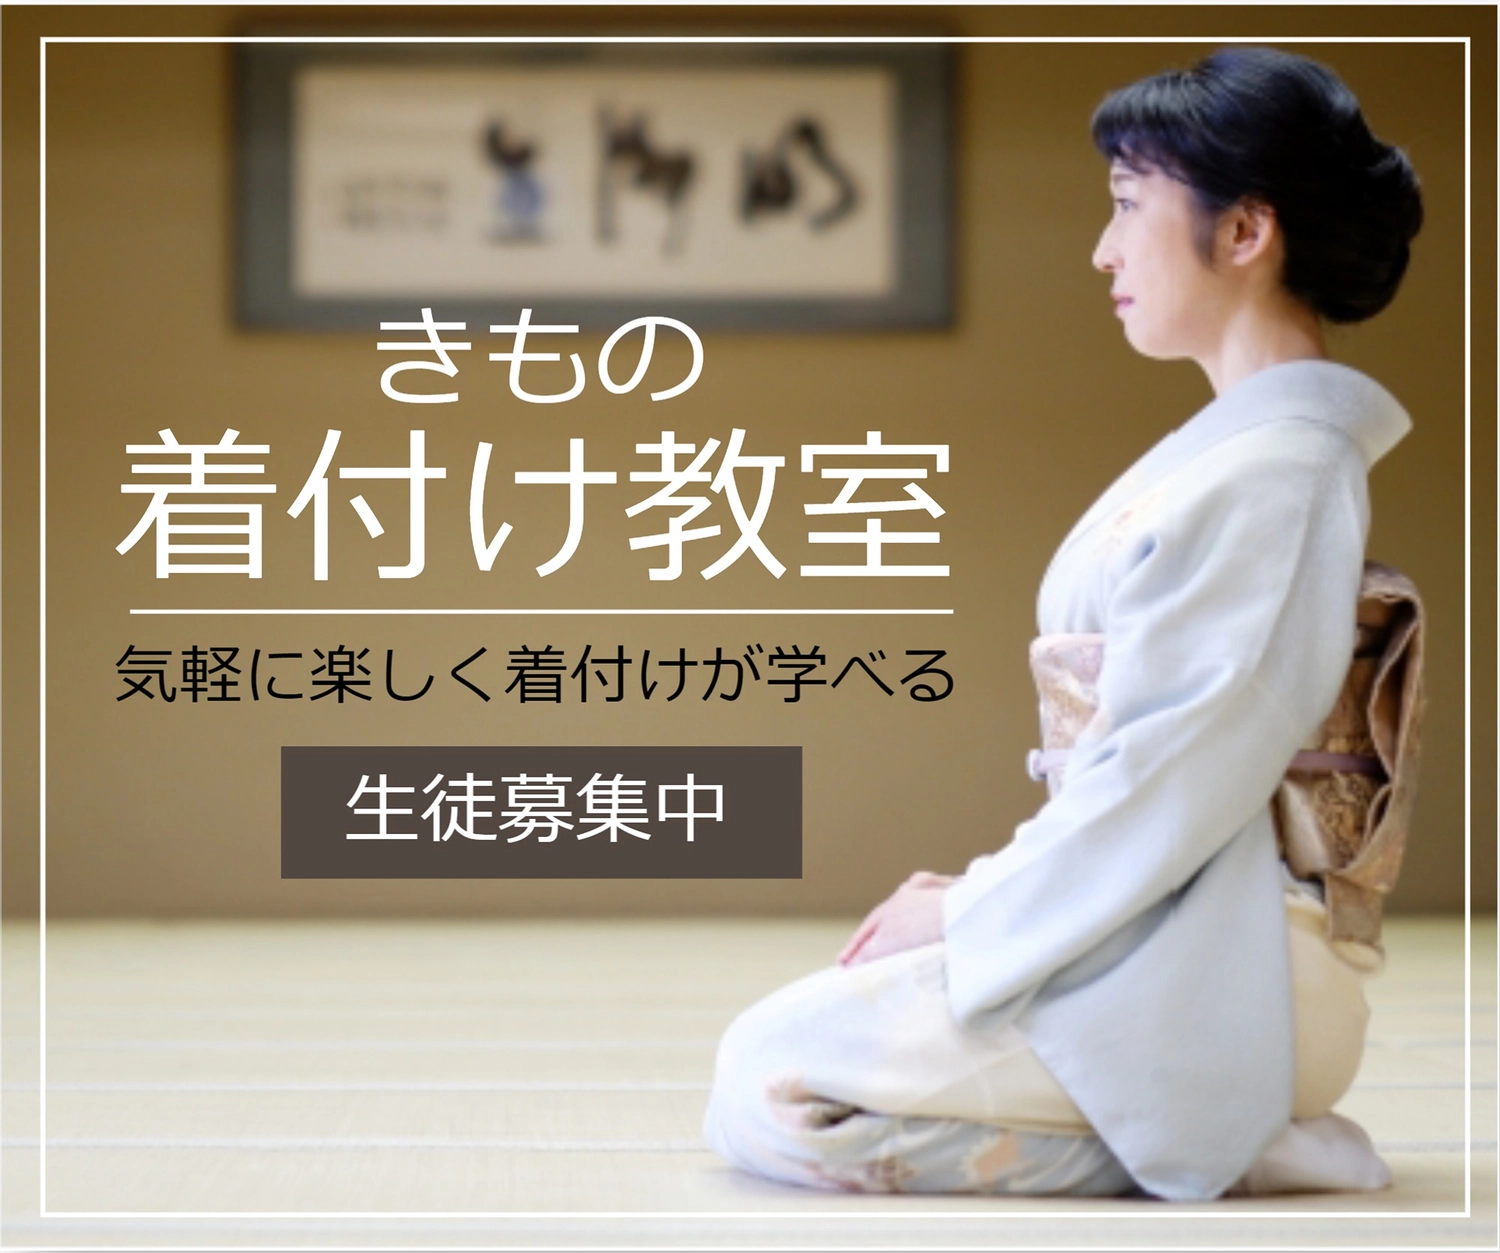 横向き女性の着付け教室バナー, kimono, create, edit, Banner template